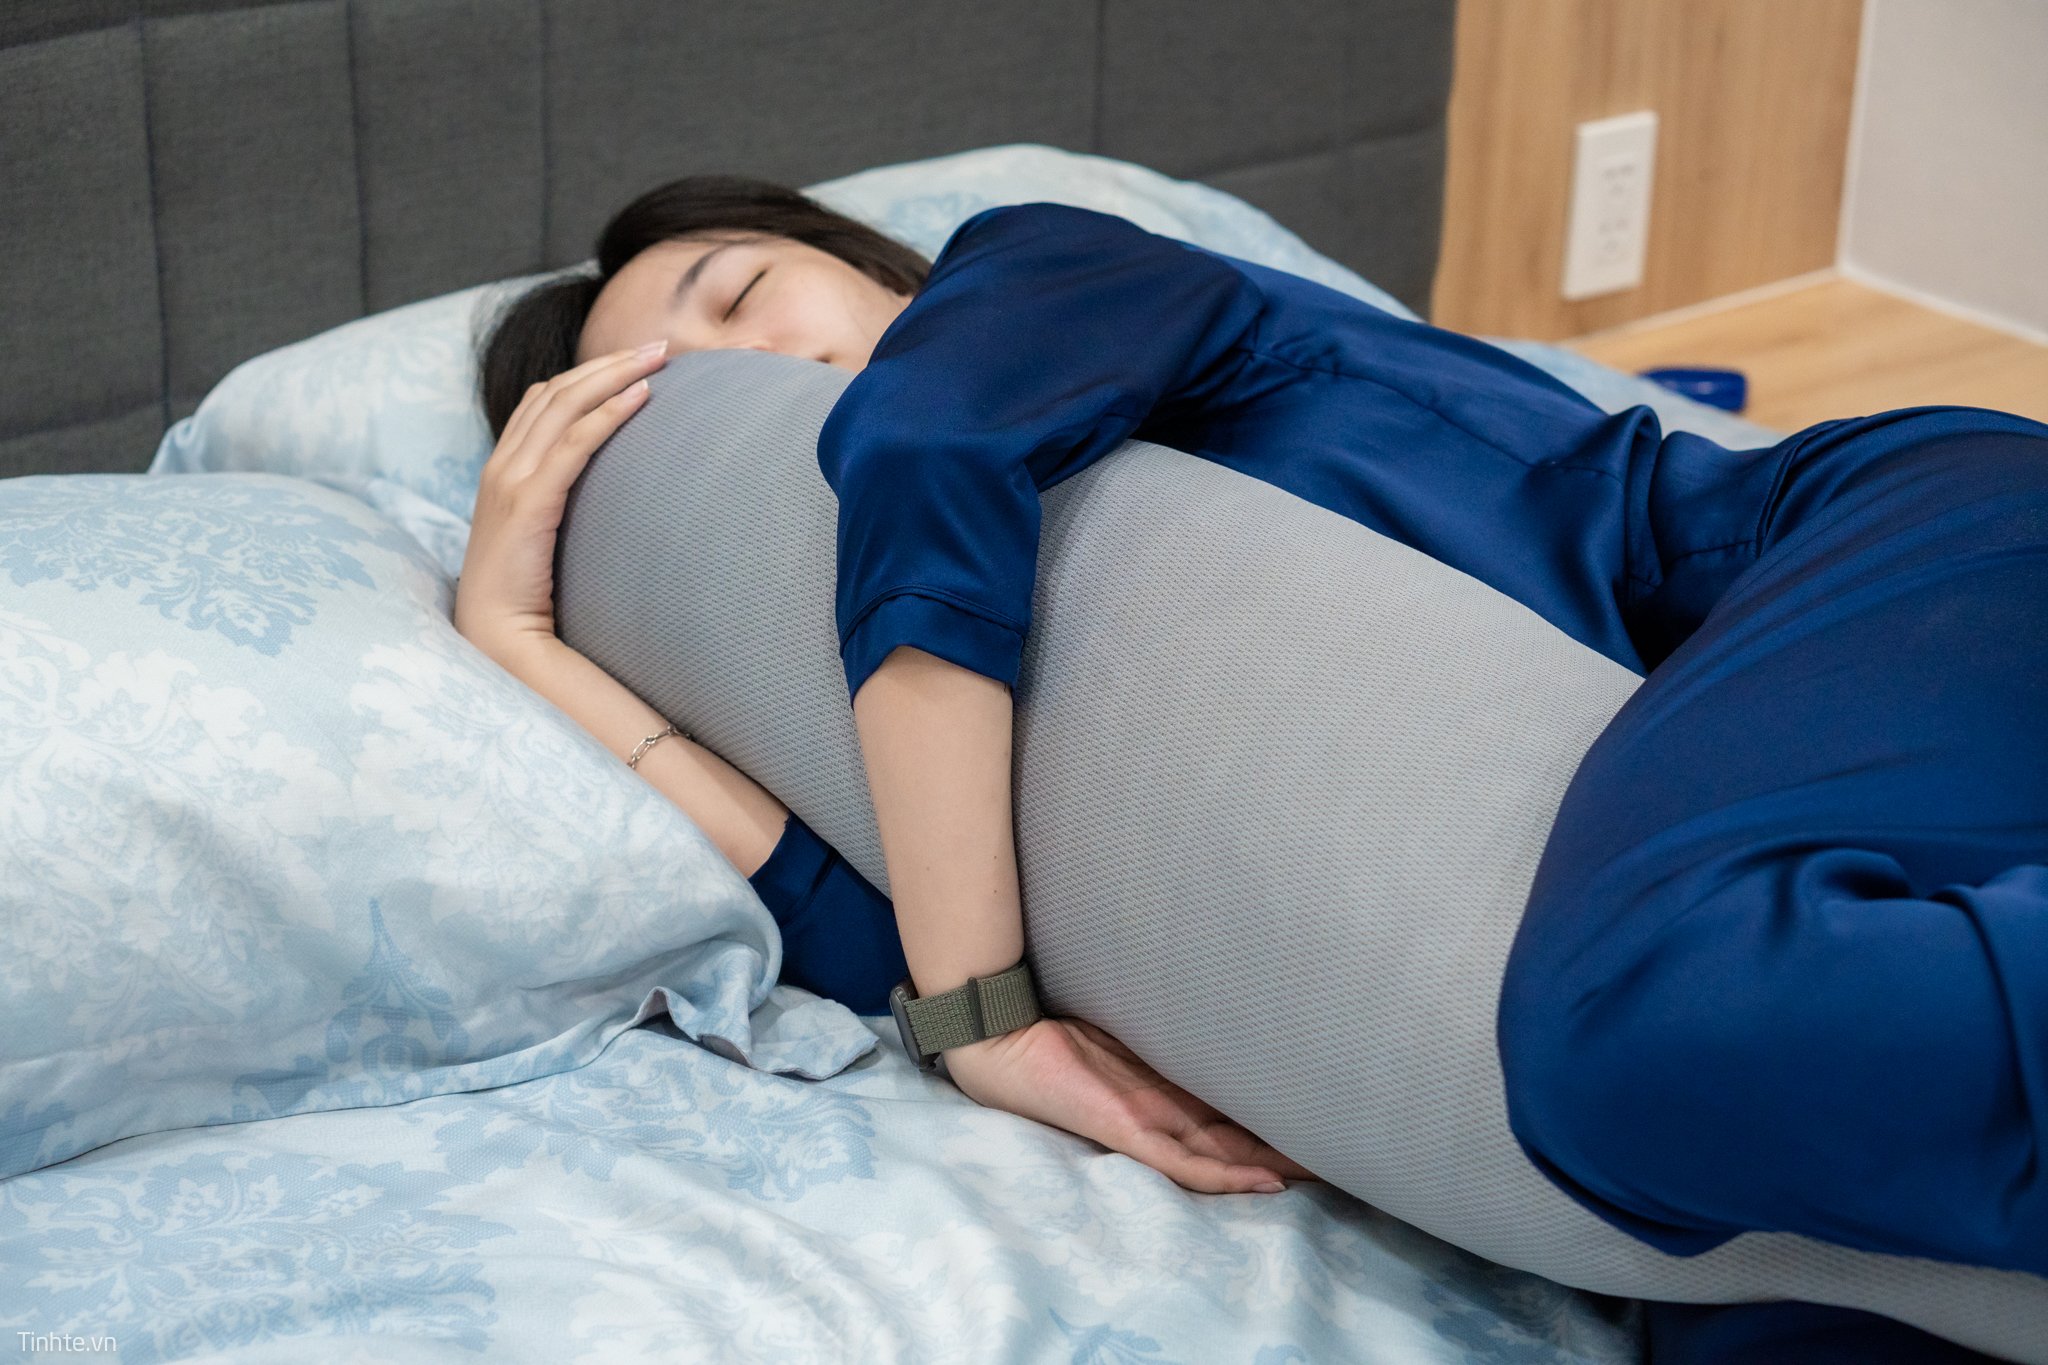 Không còn gì tuyệt vời bằng việc ôm gối vào giấc ngủ. Chỉ cần một cái ôm gối êm ái, bạn sẽ có một giấc ngủ ngon và sâu hơn. Hãy xem ảnh ôm gối để tìm thêm cảm hứng cho giấc ngủ của mình.